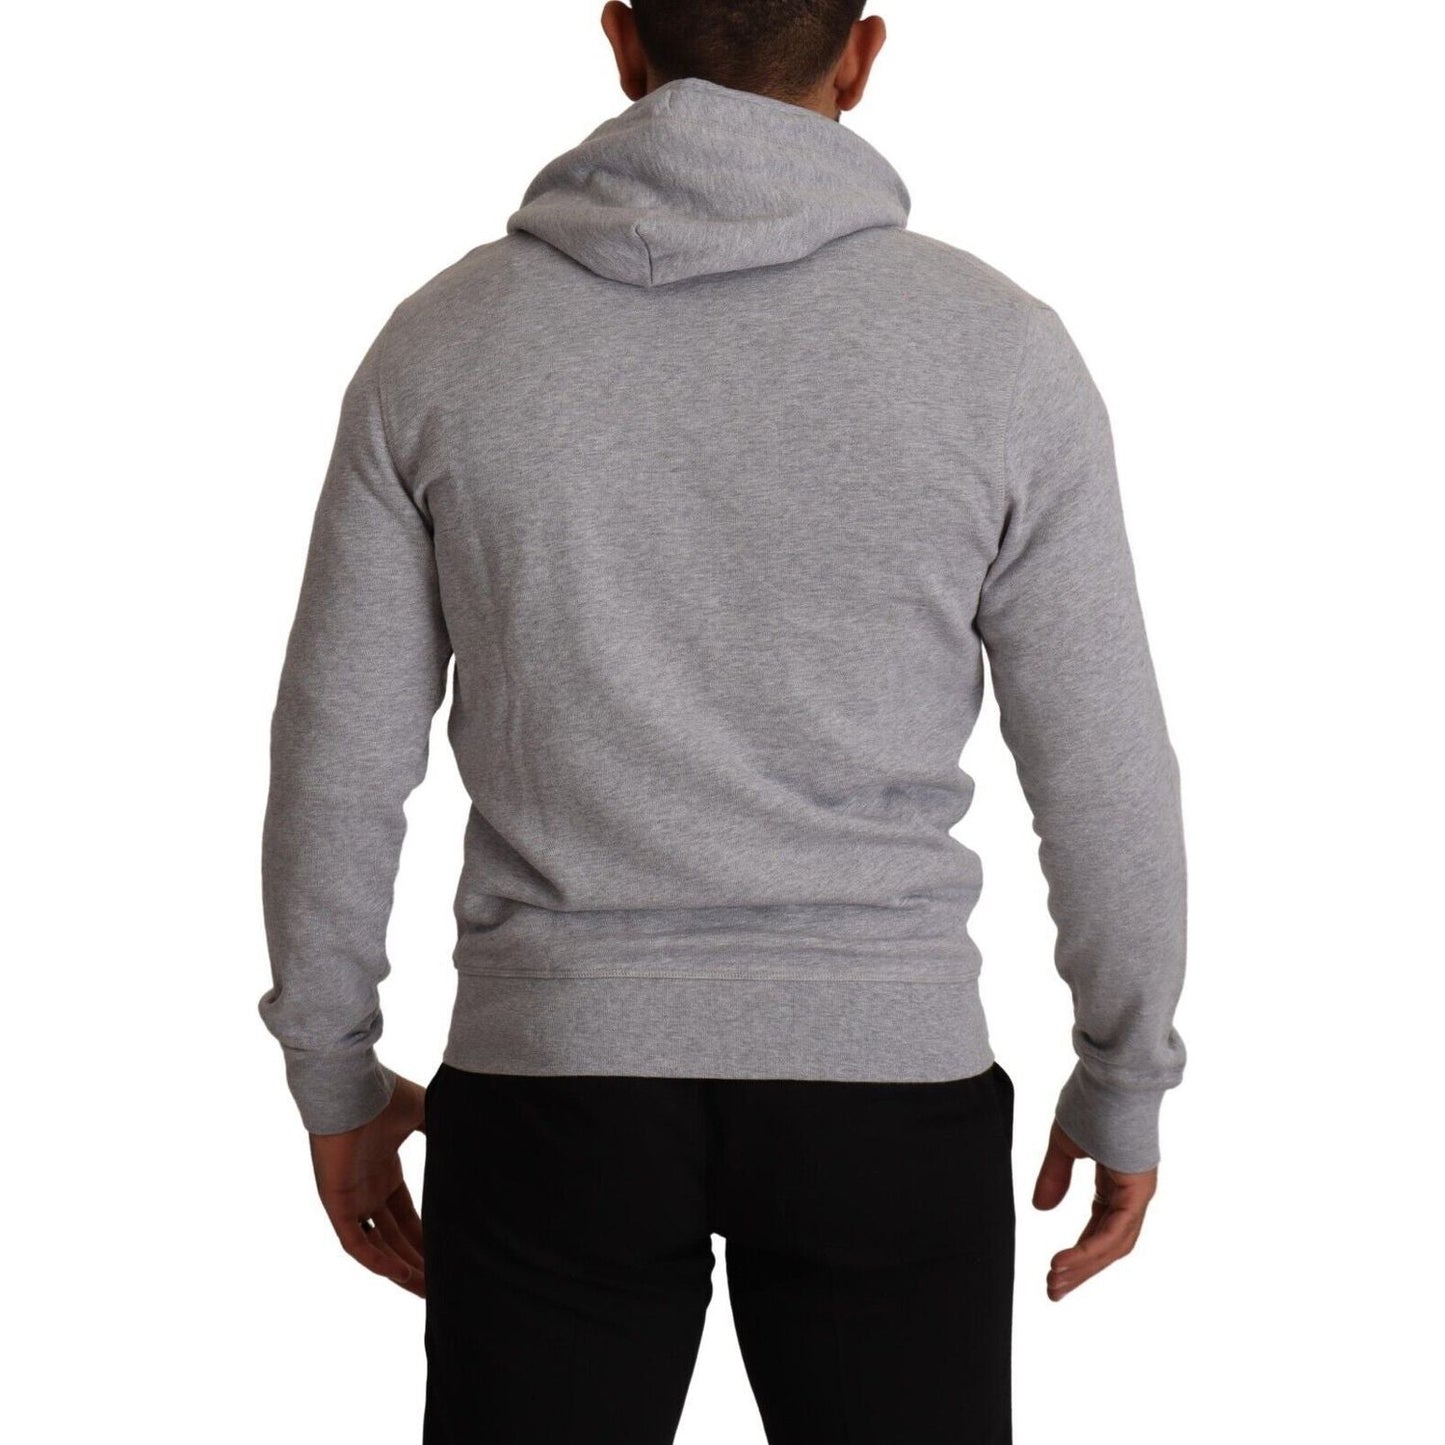 Hackett Elegant Hackett Full Zip Hooded Sweater gray-full-zip-hooded-cotton-sweatshirt-sweater s-l1600-57-1-e0ee9aed-fbc.jpg